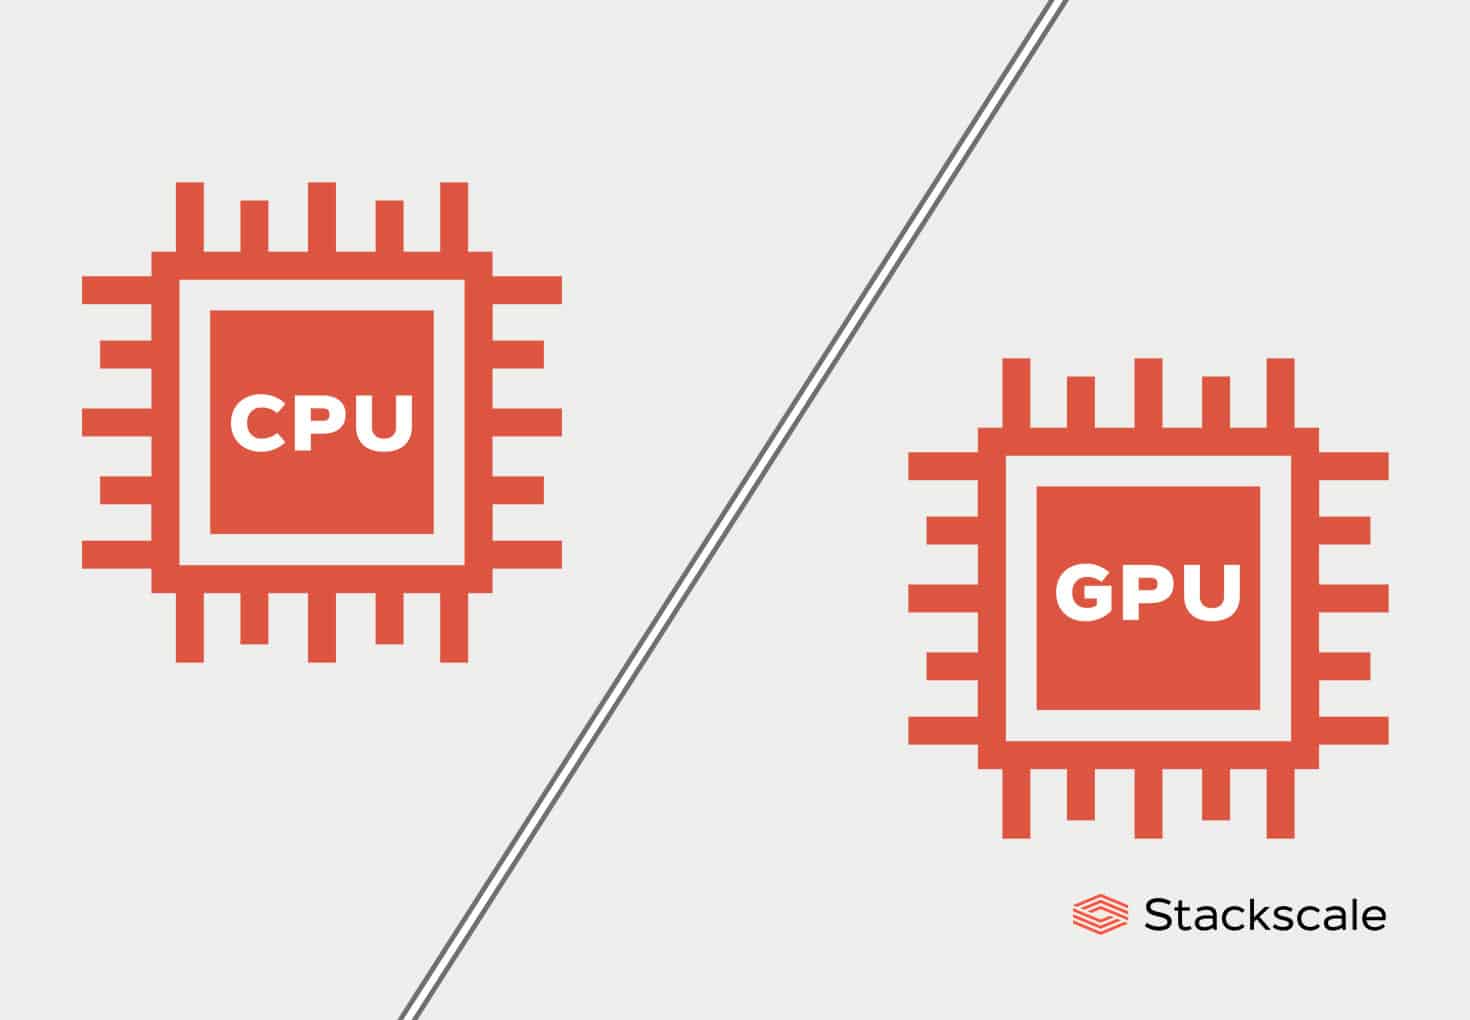 Comparison of CPU and GPU